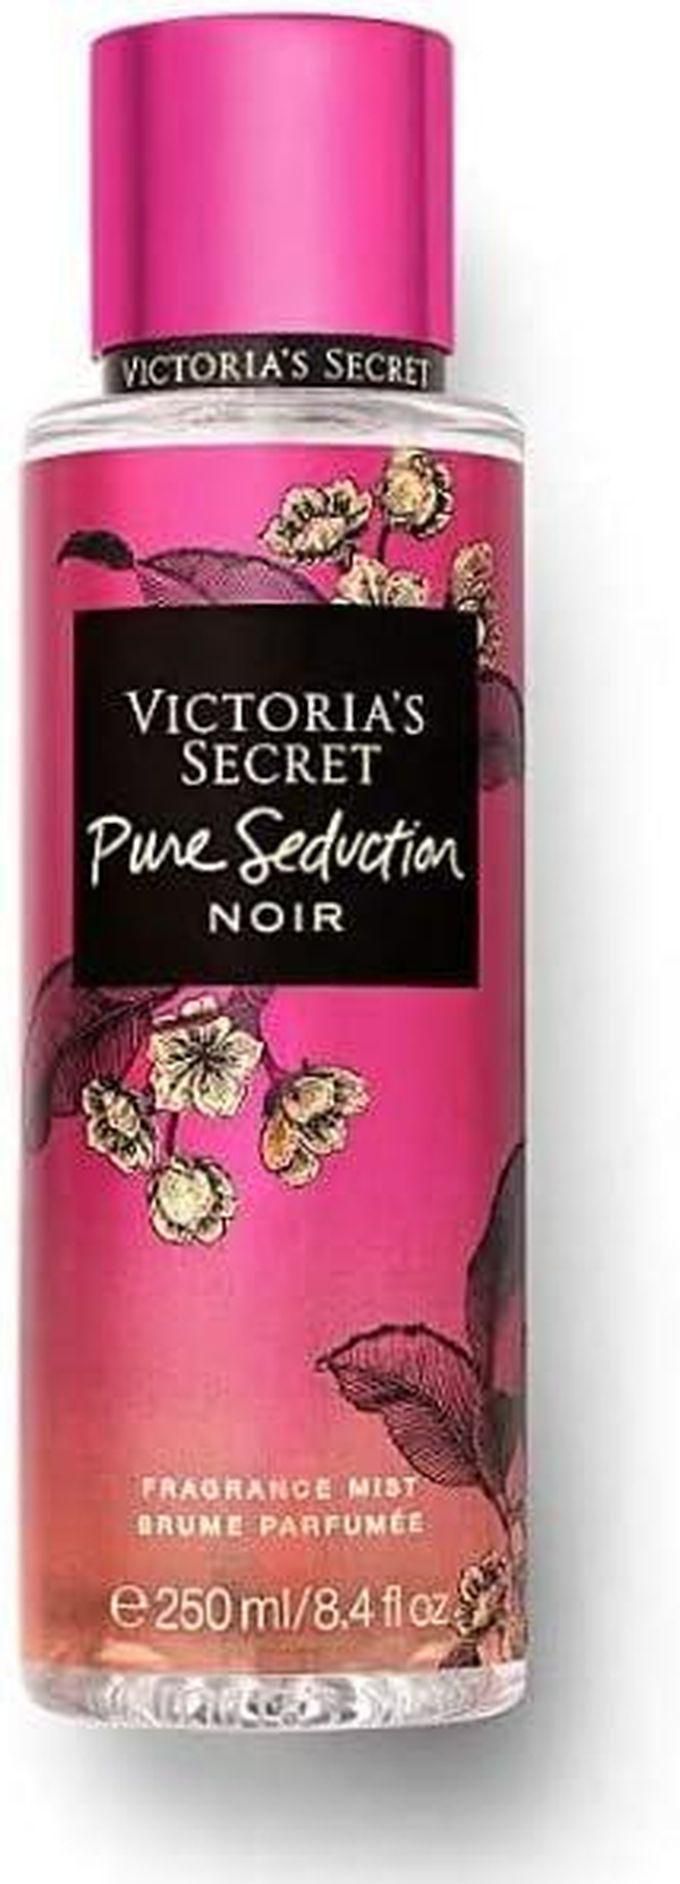 Victoria's Secret Pure Seduction Noir - Body mist